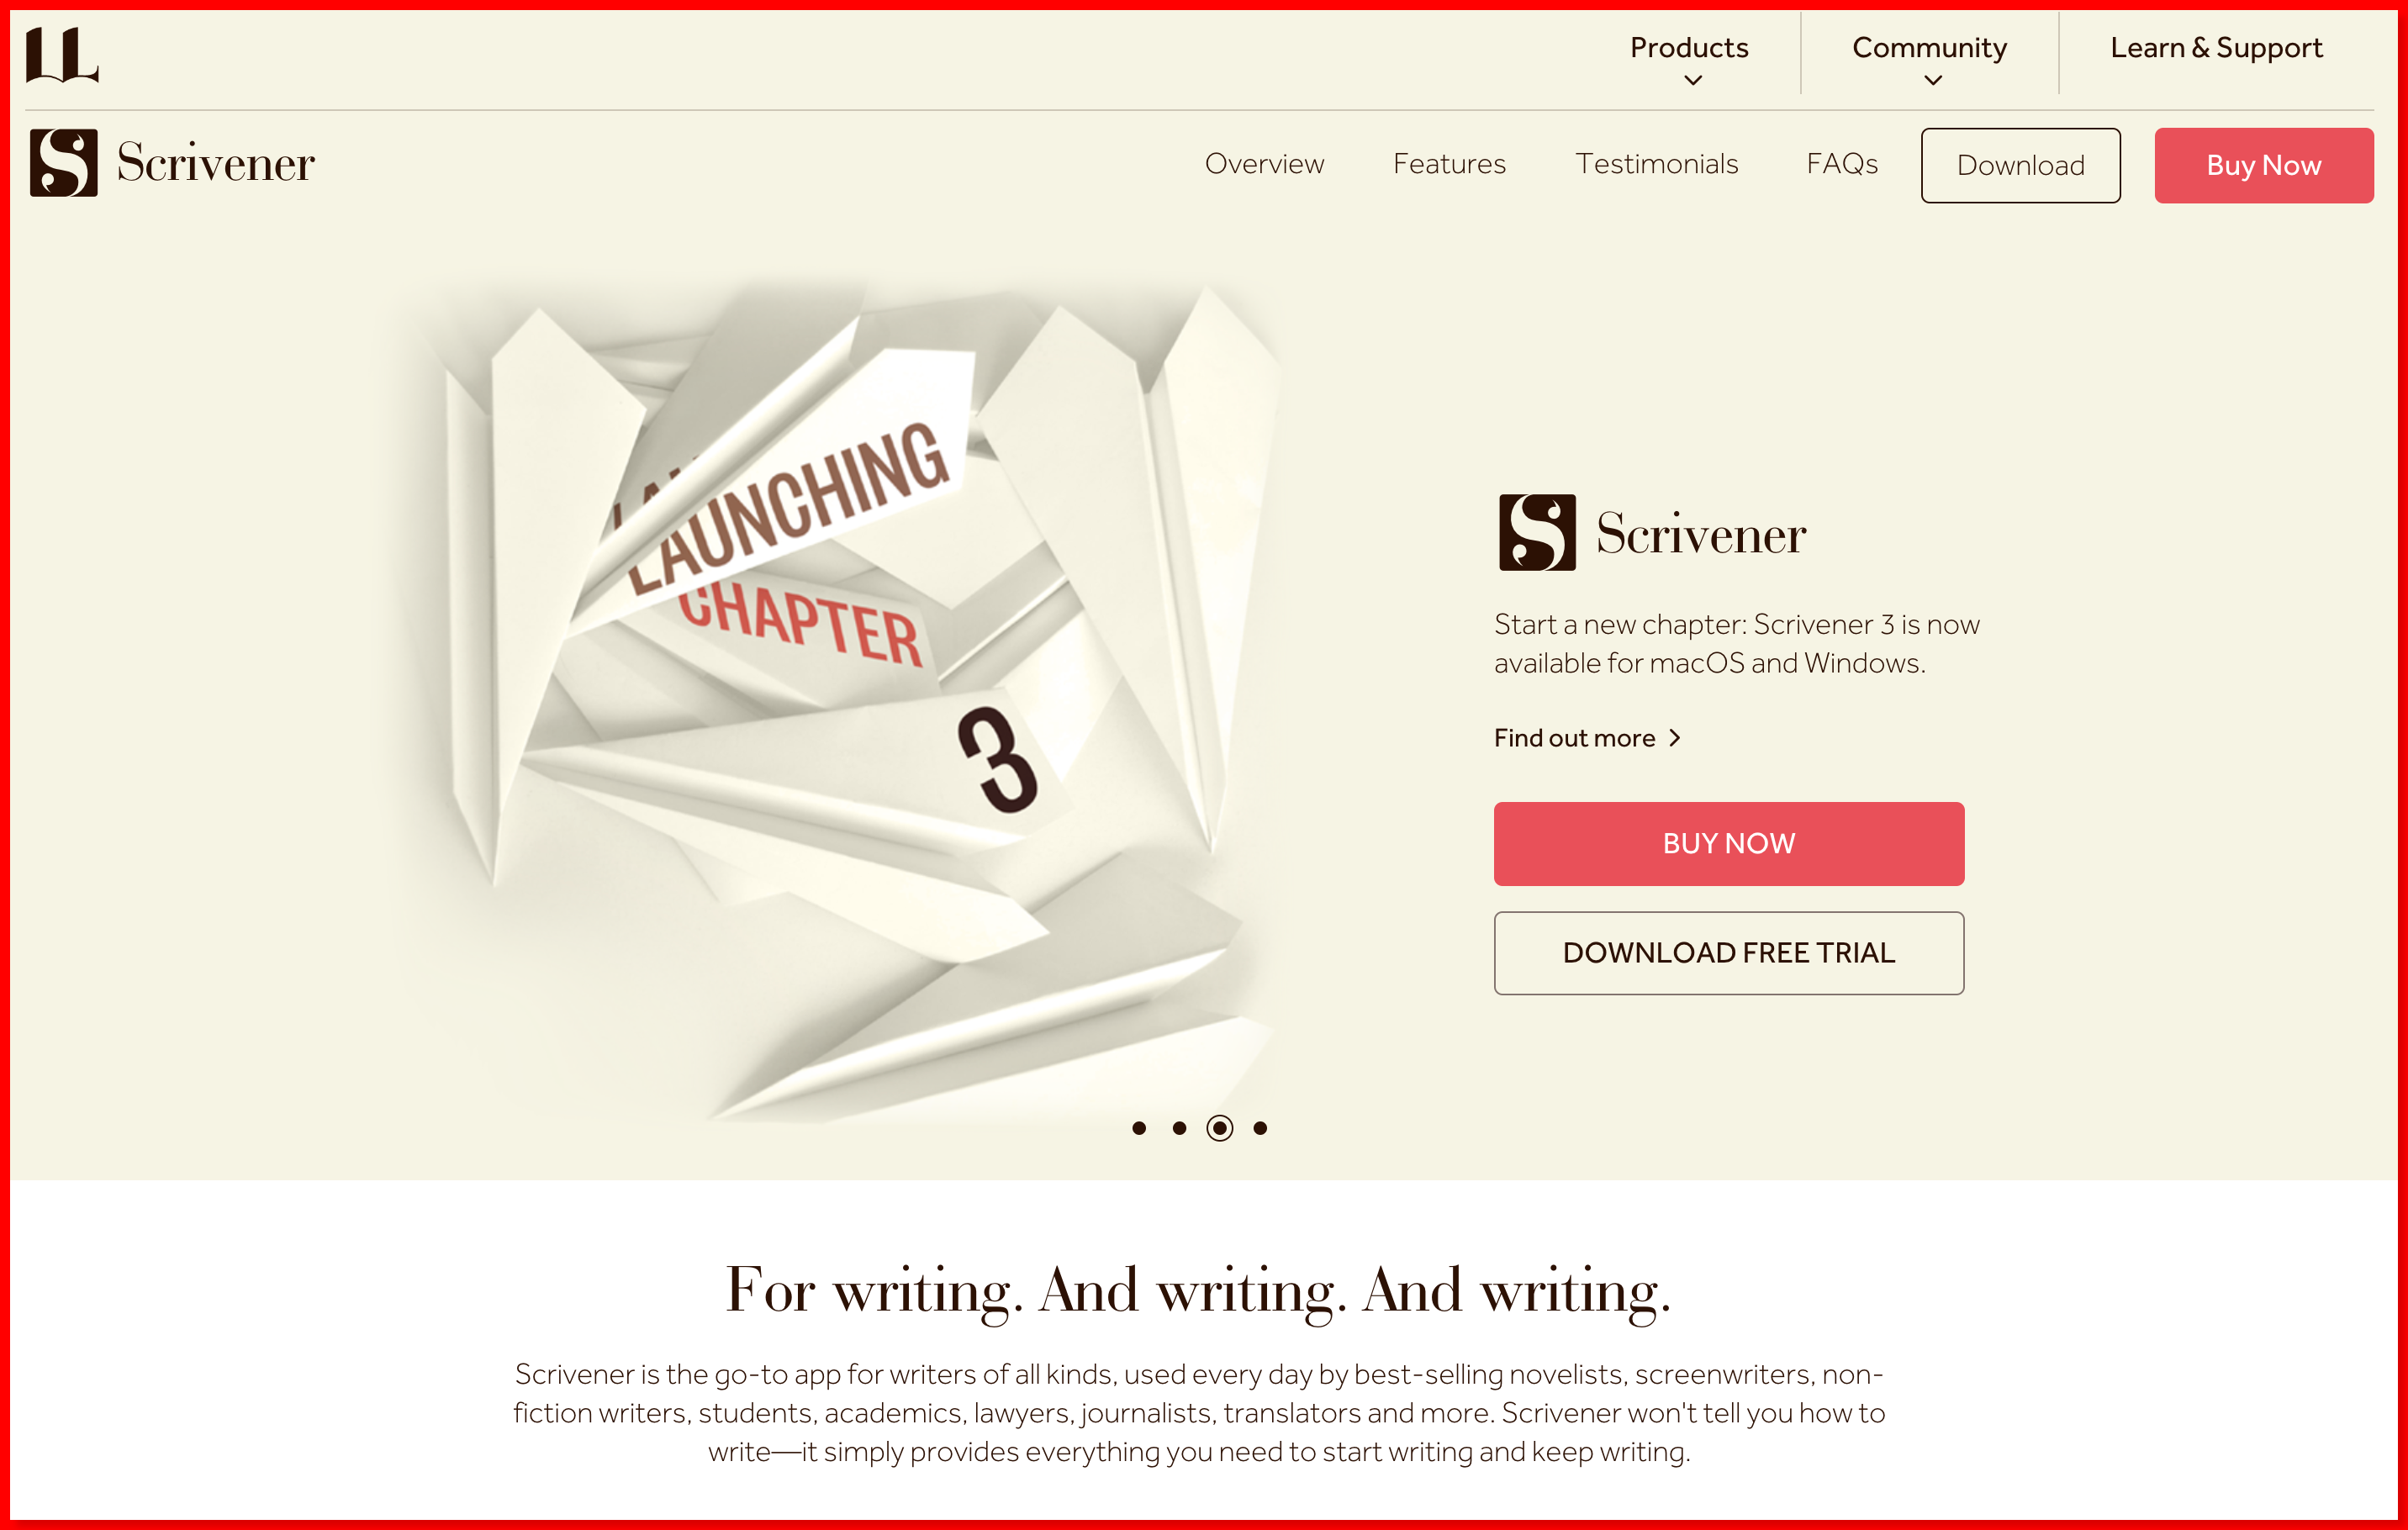 Scrivener homepage